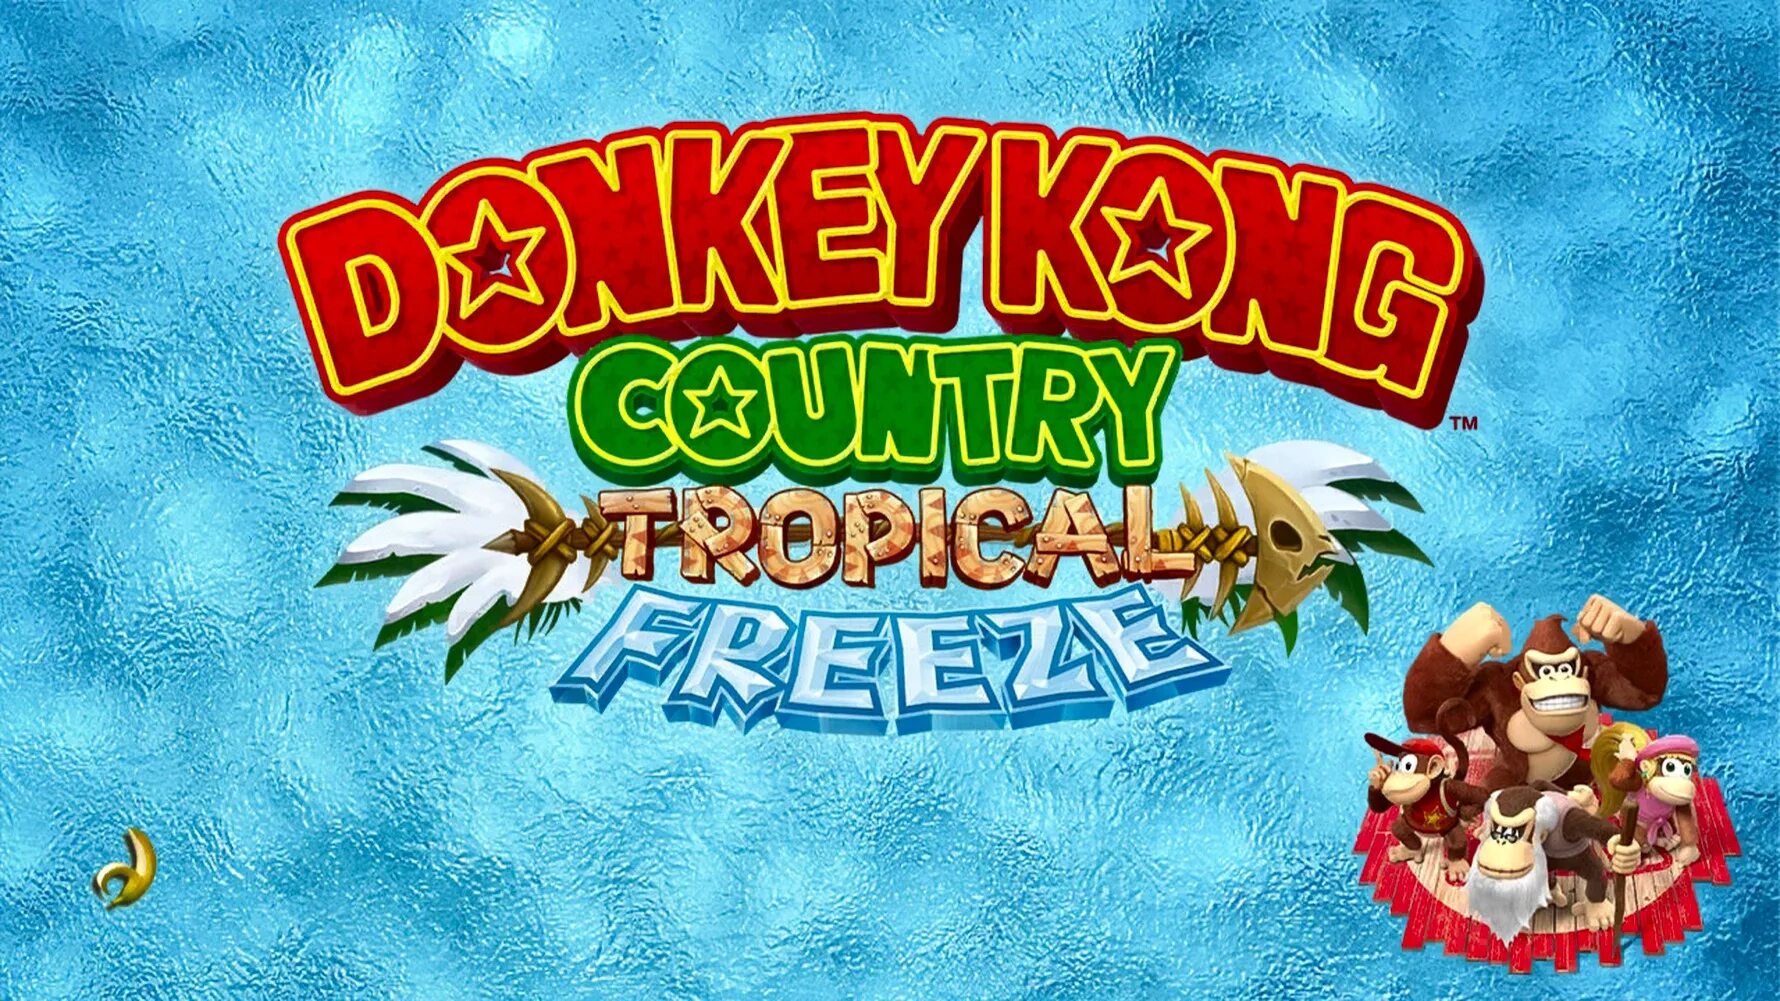 Donkey kong country freeze. Donkey Kong Country Tropical Freeze Switch. Donkey Kong Country Tropical Freeze Wii u. Картридж Nintendo Switch Donkey Kong Country: Tropical Freeze. Donkey Kong Country Tropical Freeze обложка.